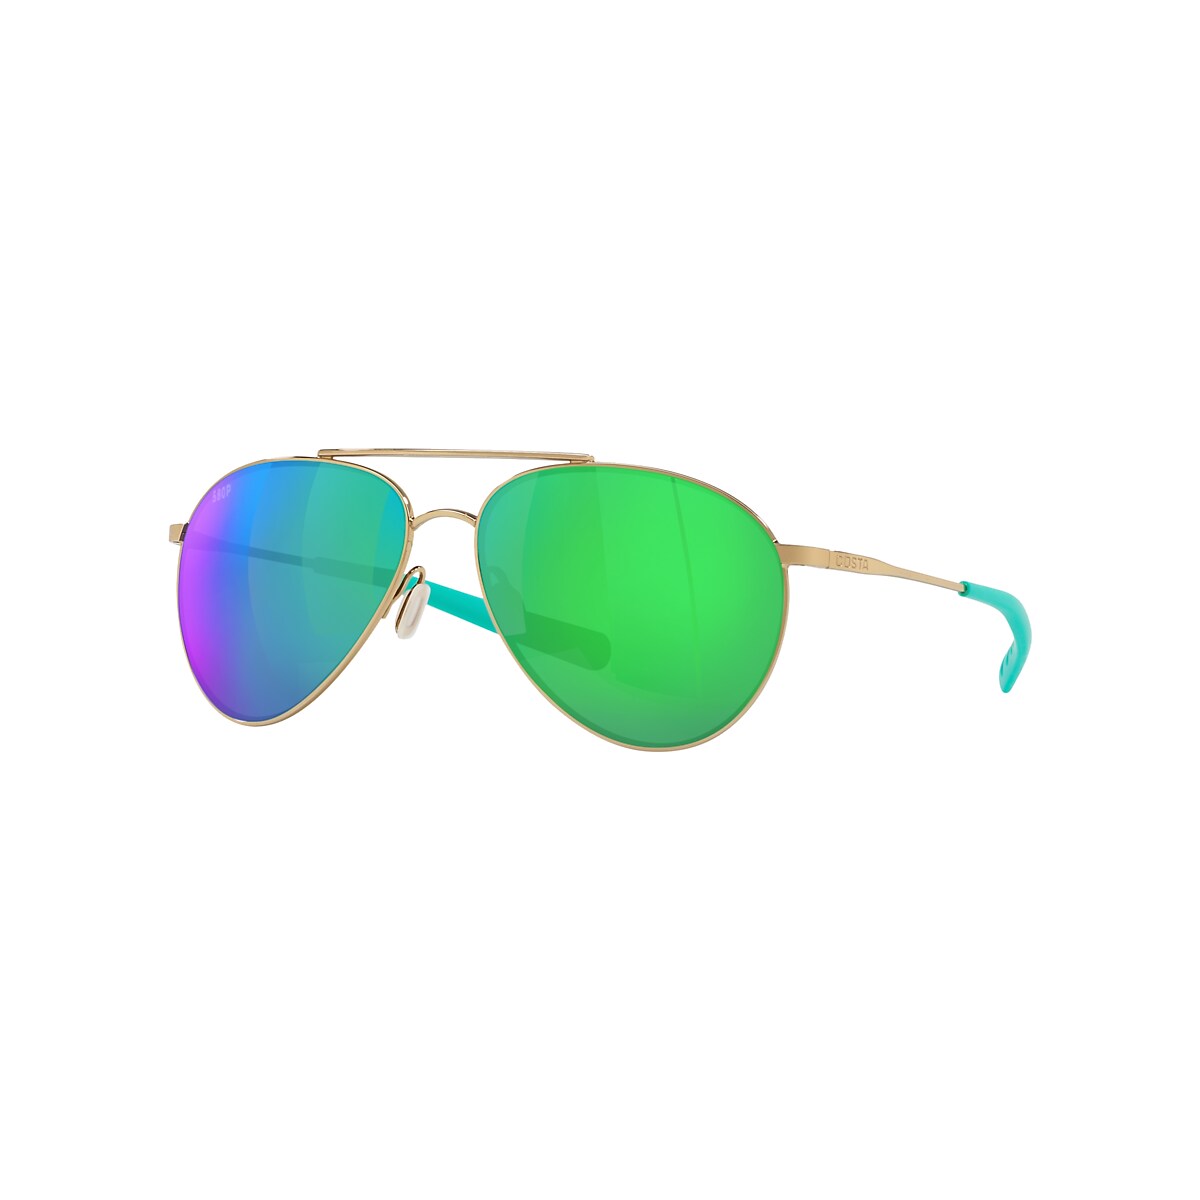 Piper Polarized Sunglasses in Green Mirror